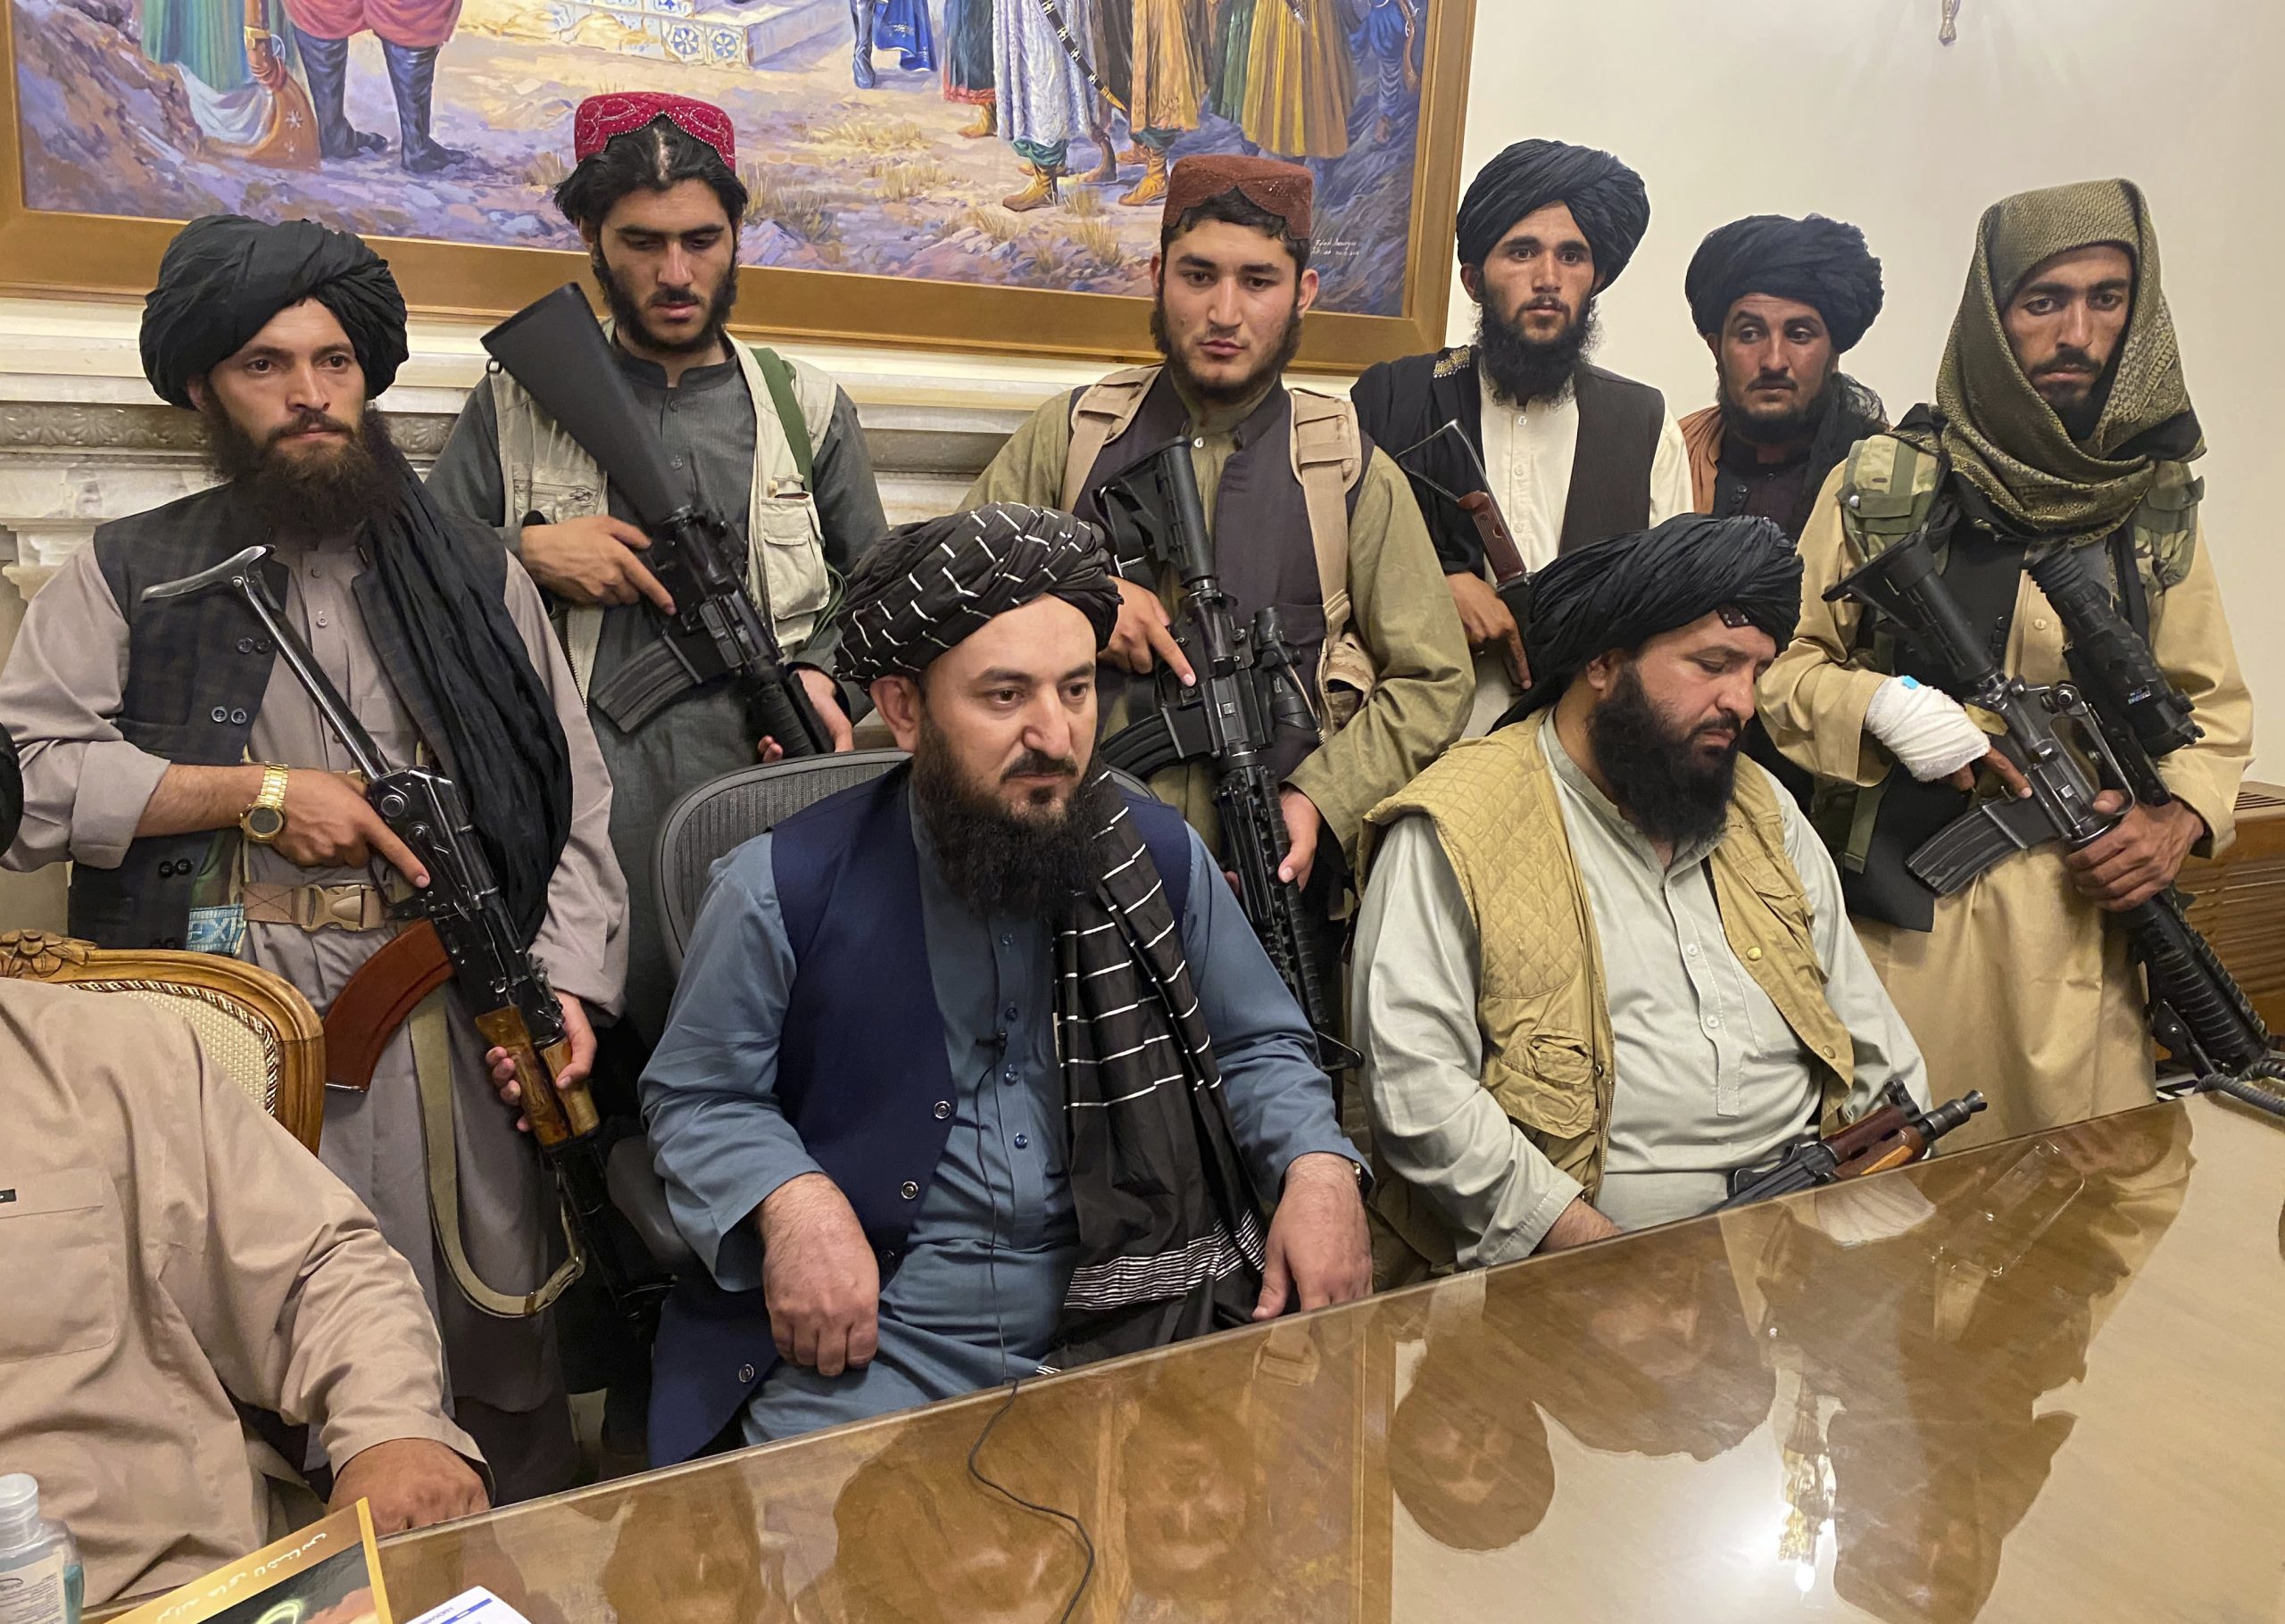 Los talibanes toman el palacio presidencial en Kabul mientras los diplomáticos occidentales huyen